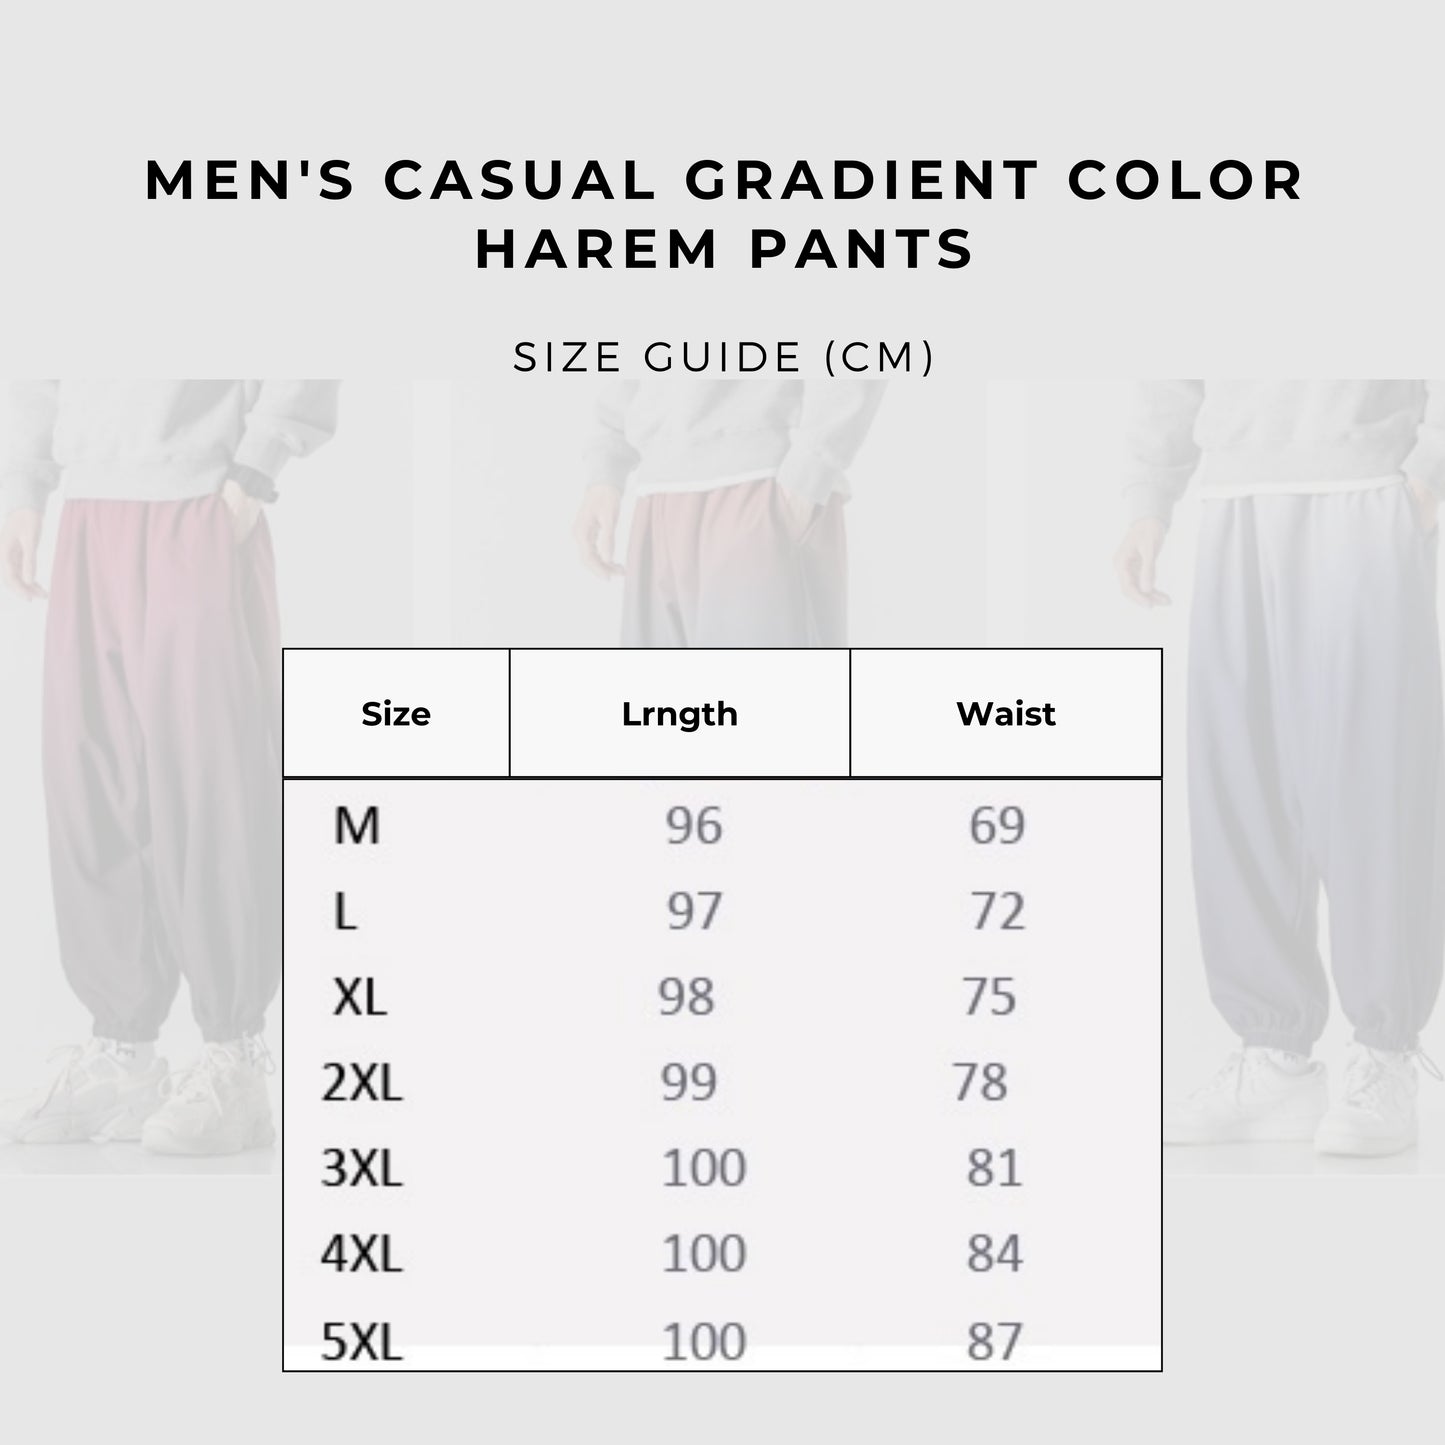 Men's Casual Gradient Color Harem Pants size